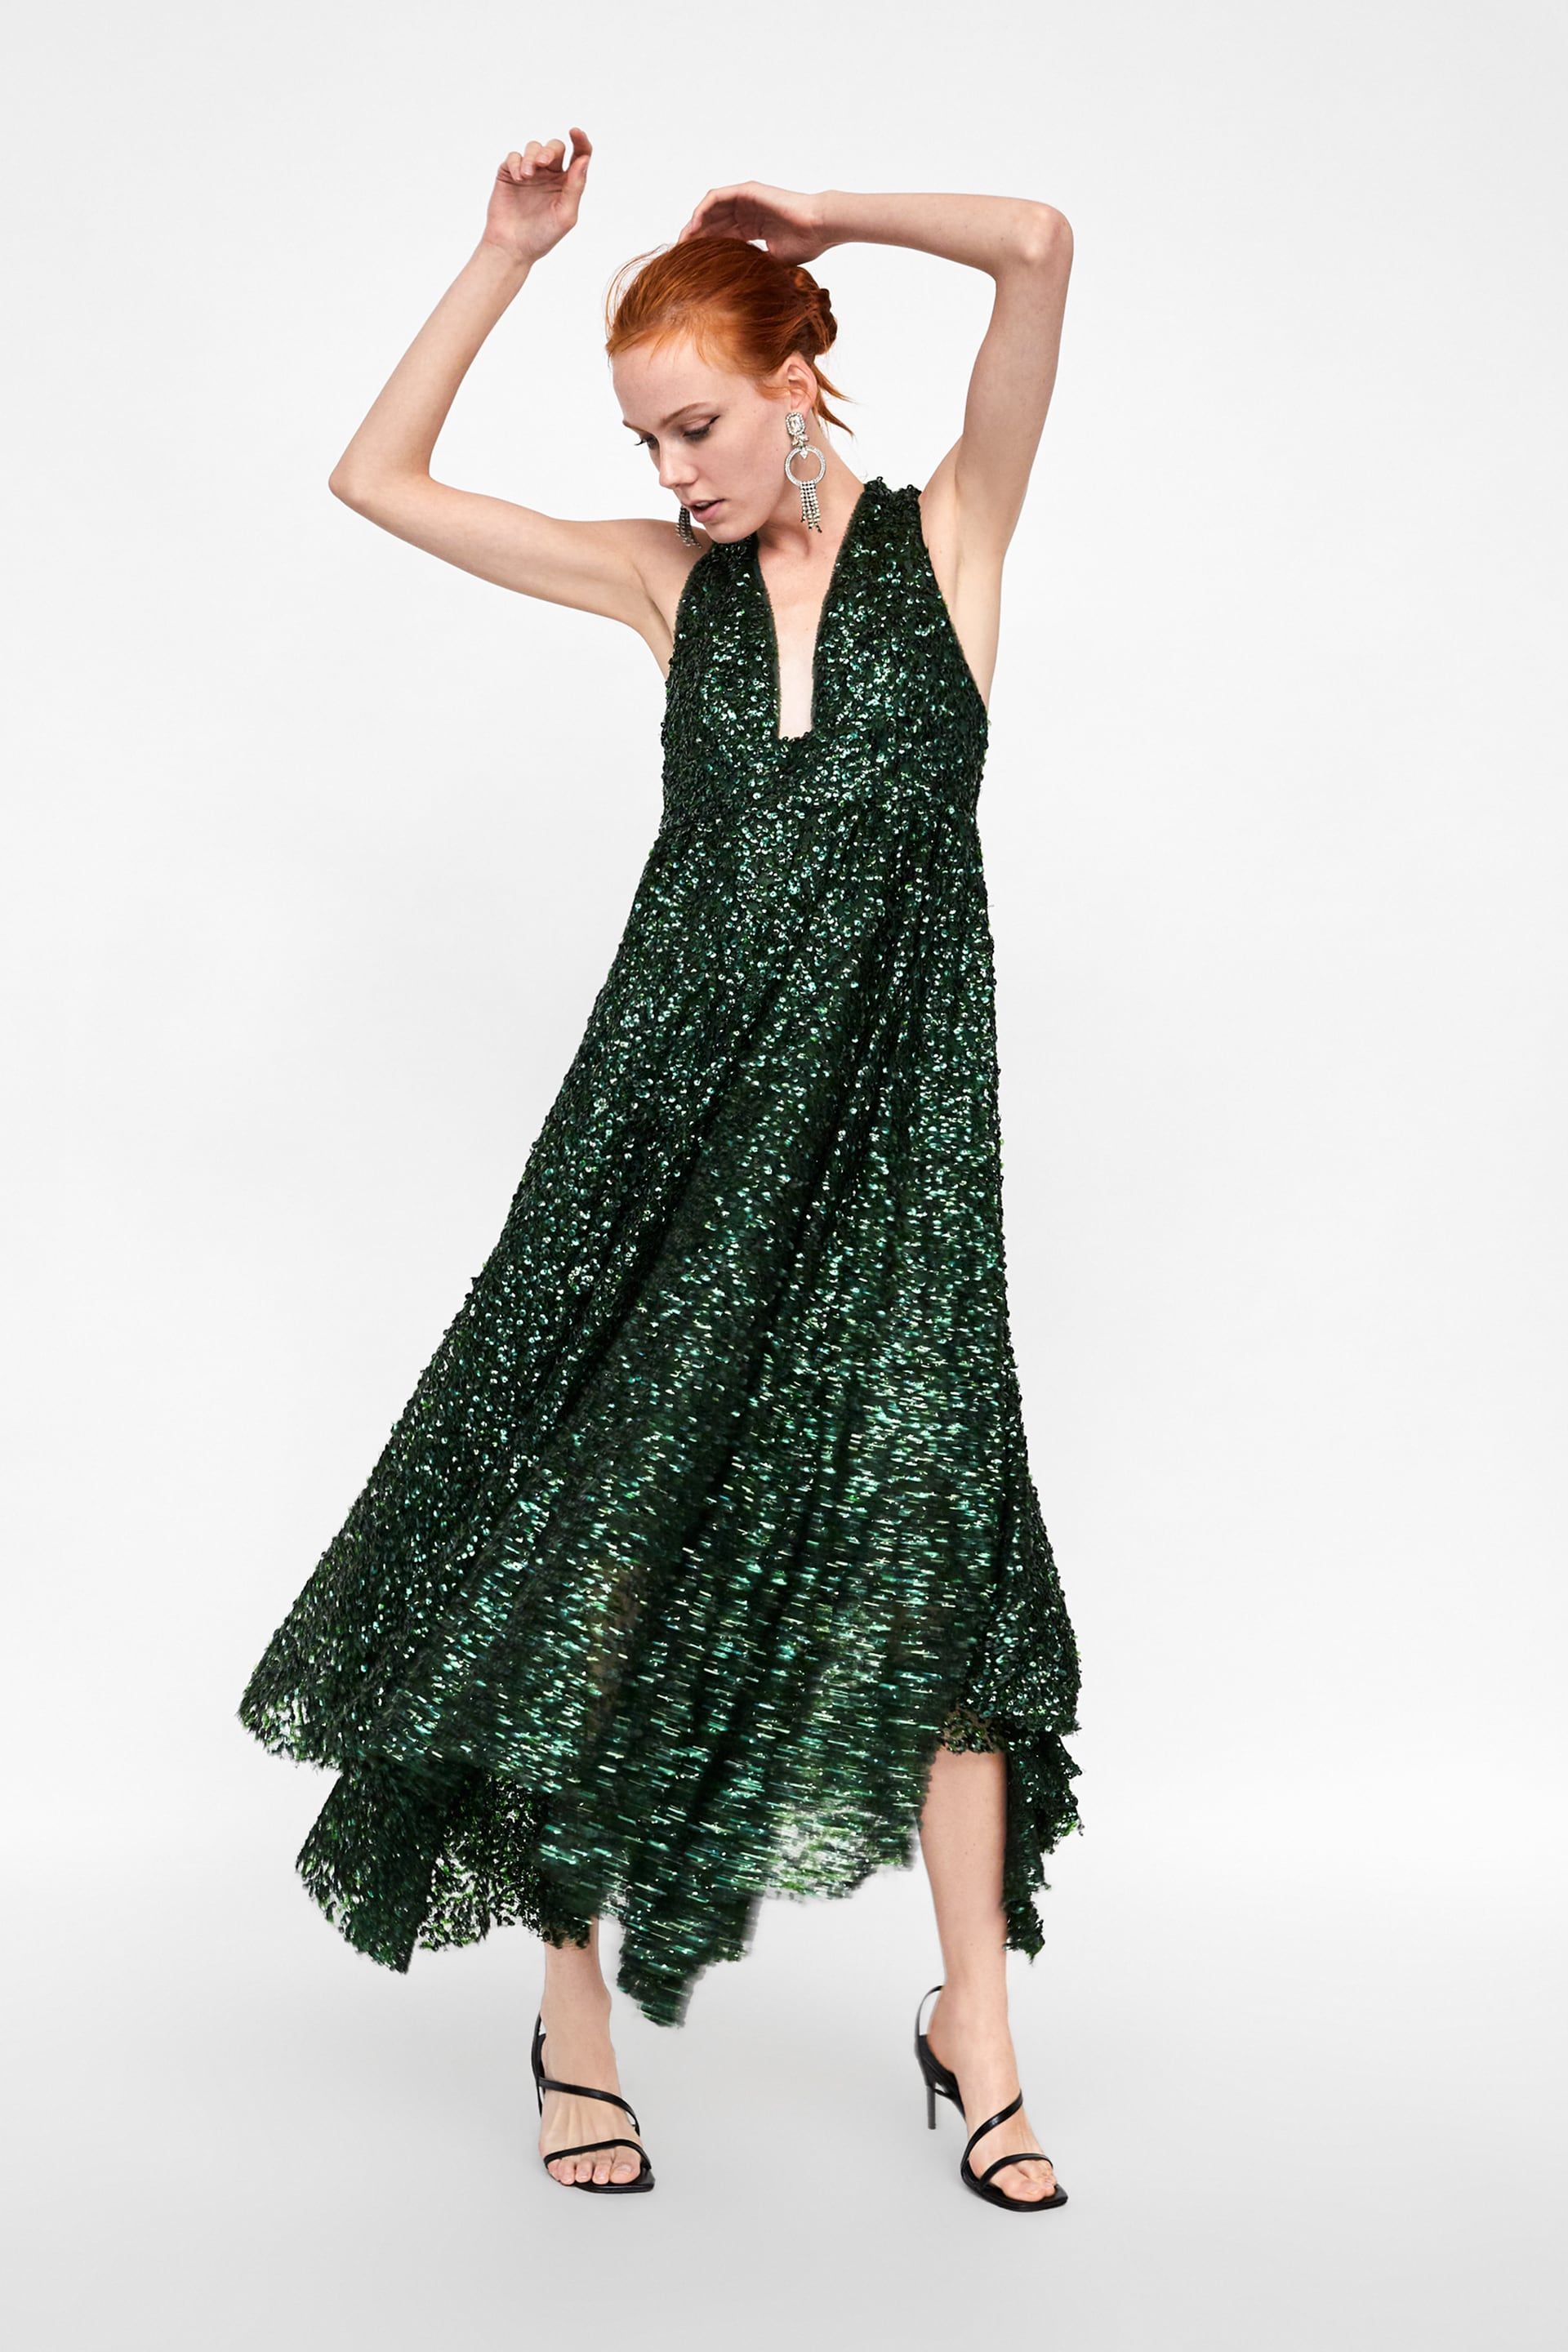 Vestidos de fiesta de Zara con lentejuelas - El vestido lentejuelas de Zara que será un éxito de ventas estas fiestas